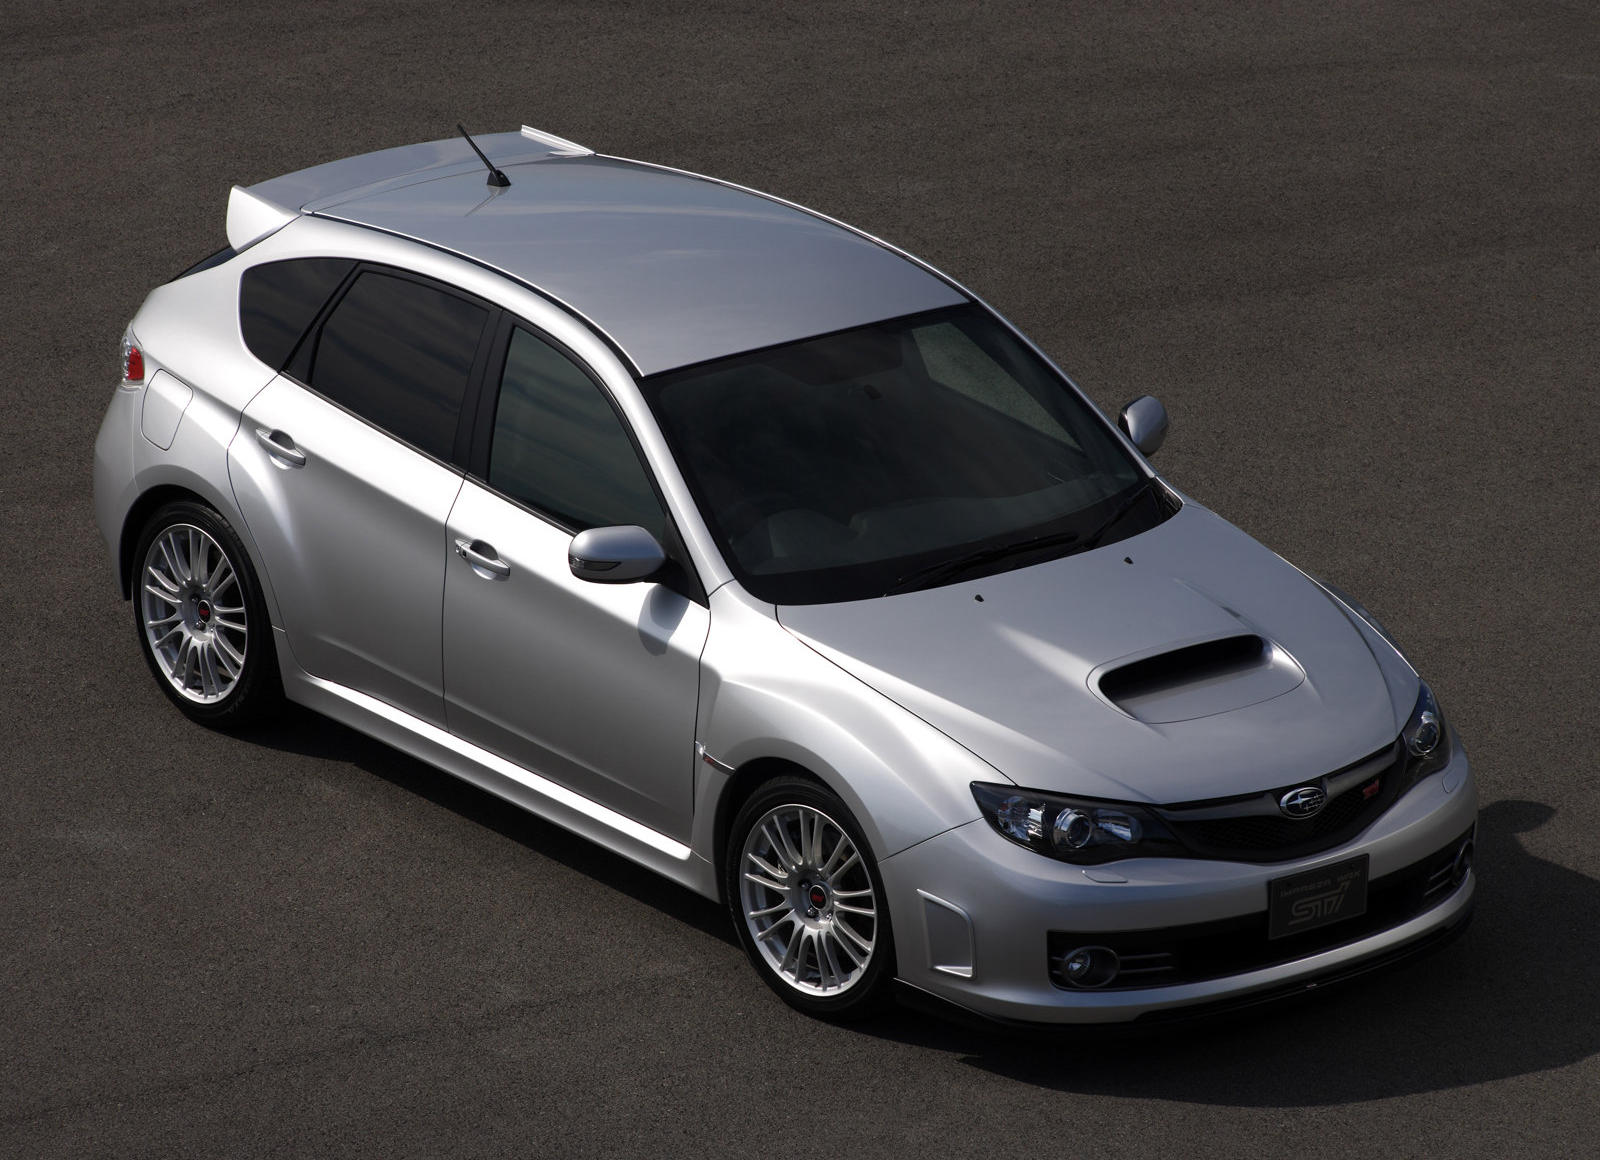 2008 Subaru Impreza WRX STI Hatchback Review Trims Specs Price New 